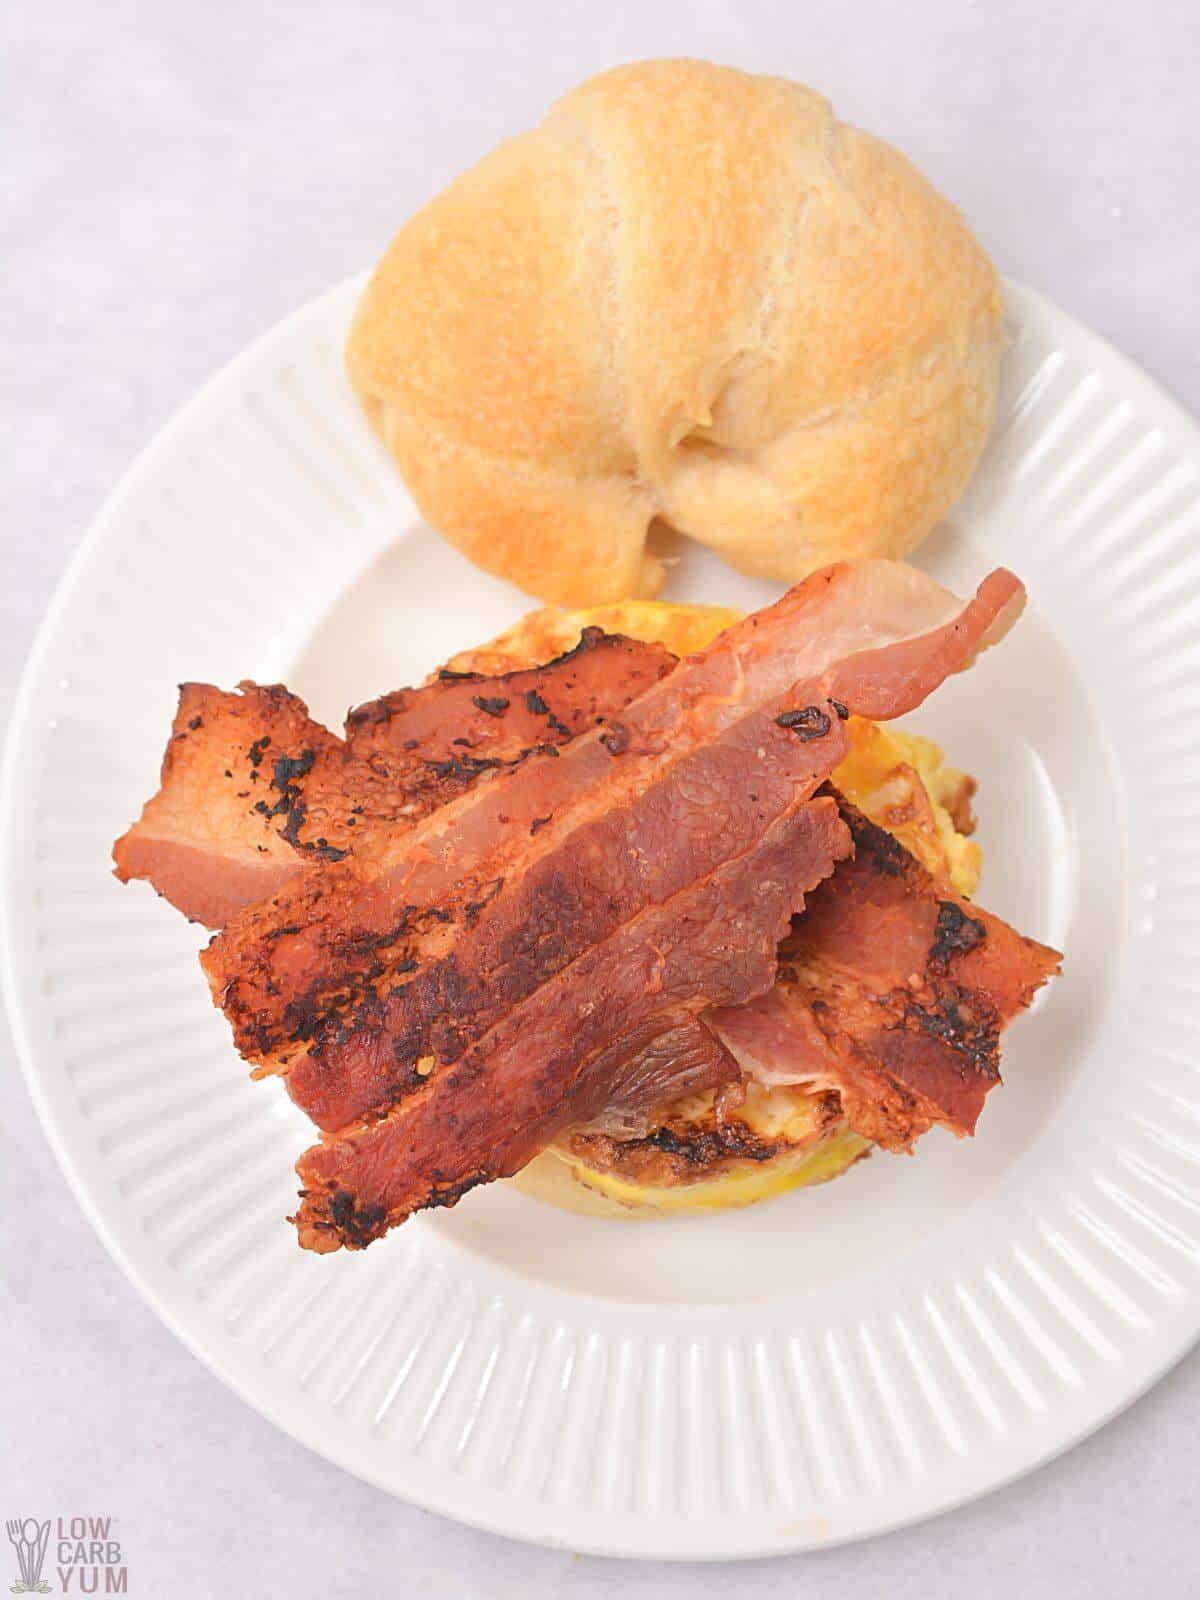 bacon added to breakfast sandwich.